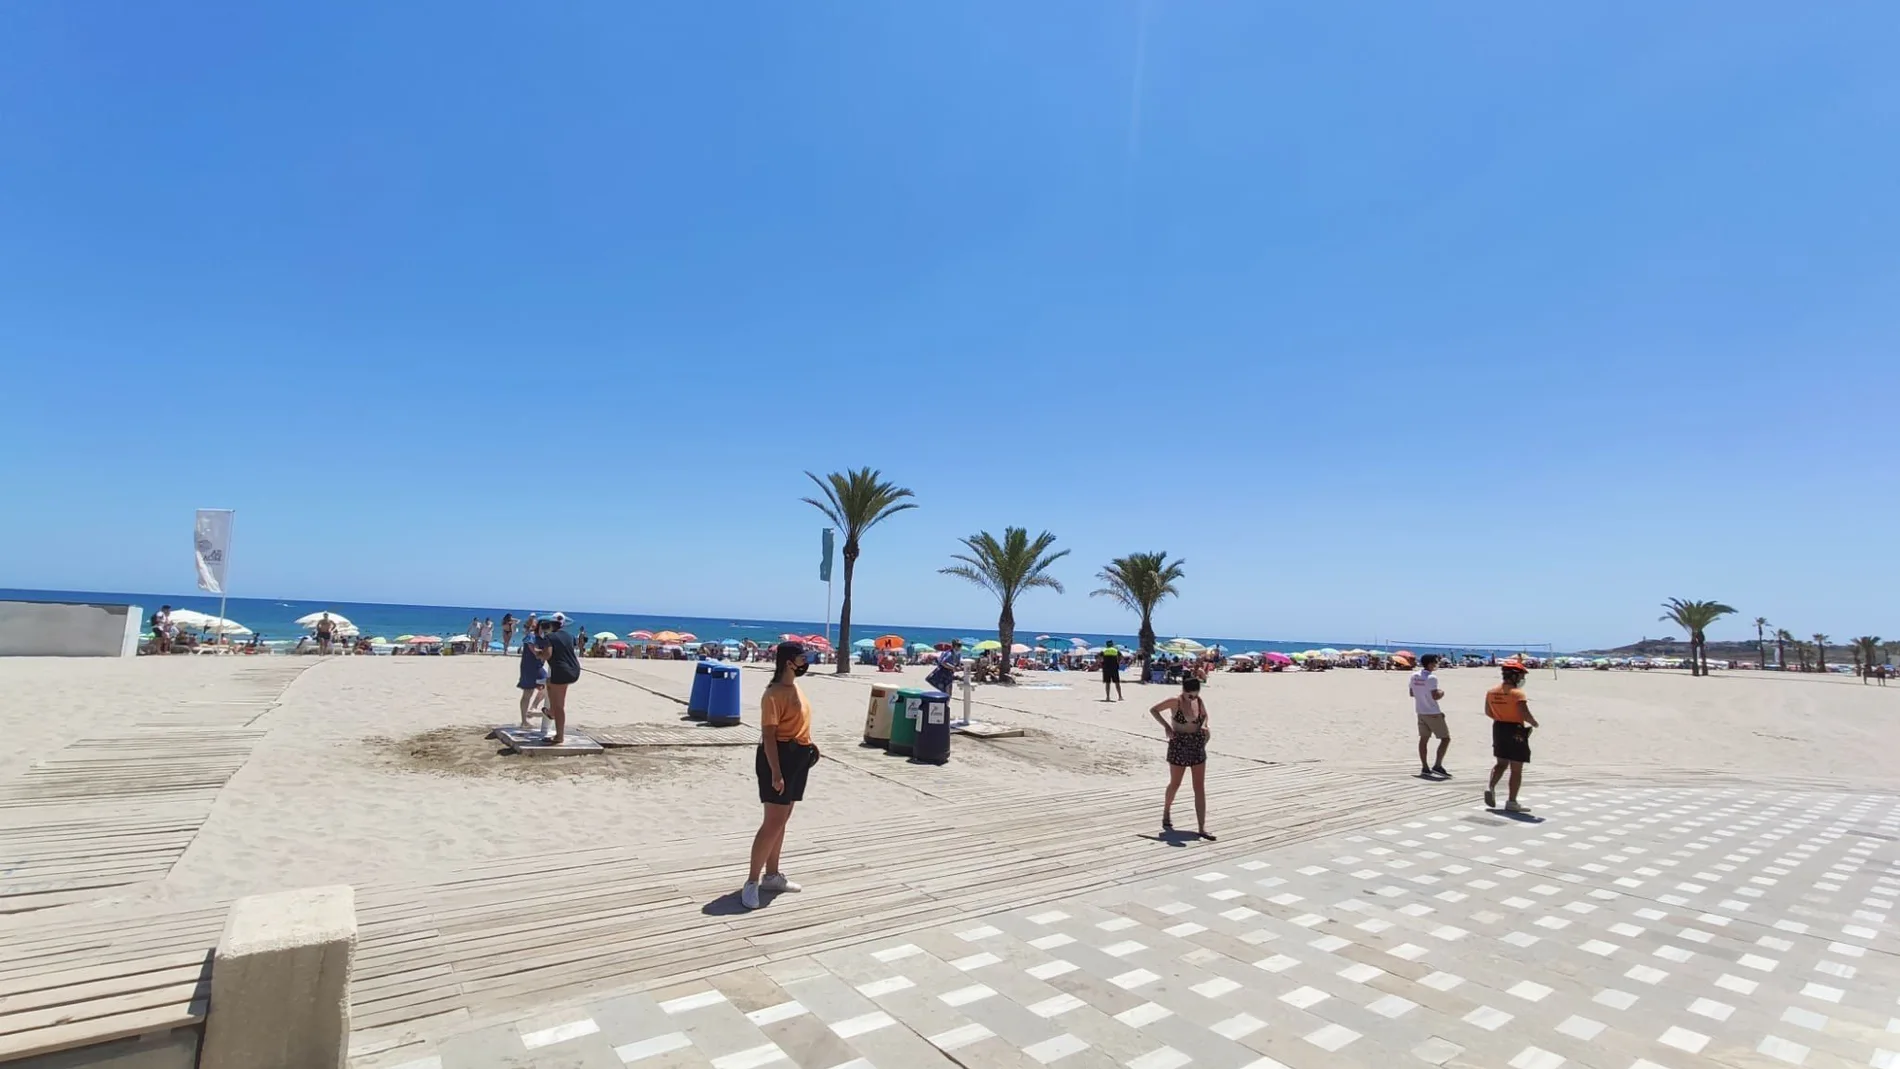 El Ayuntamiento de Alicante ha limitado el acceso de personas en un tramo de la playa de San Juan